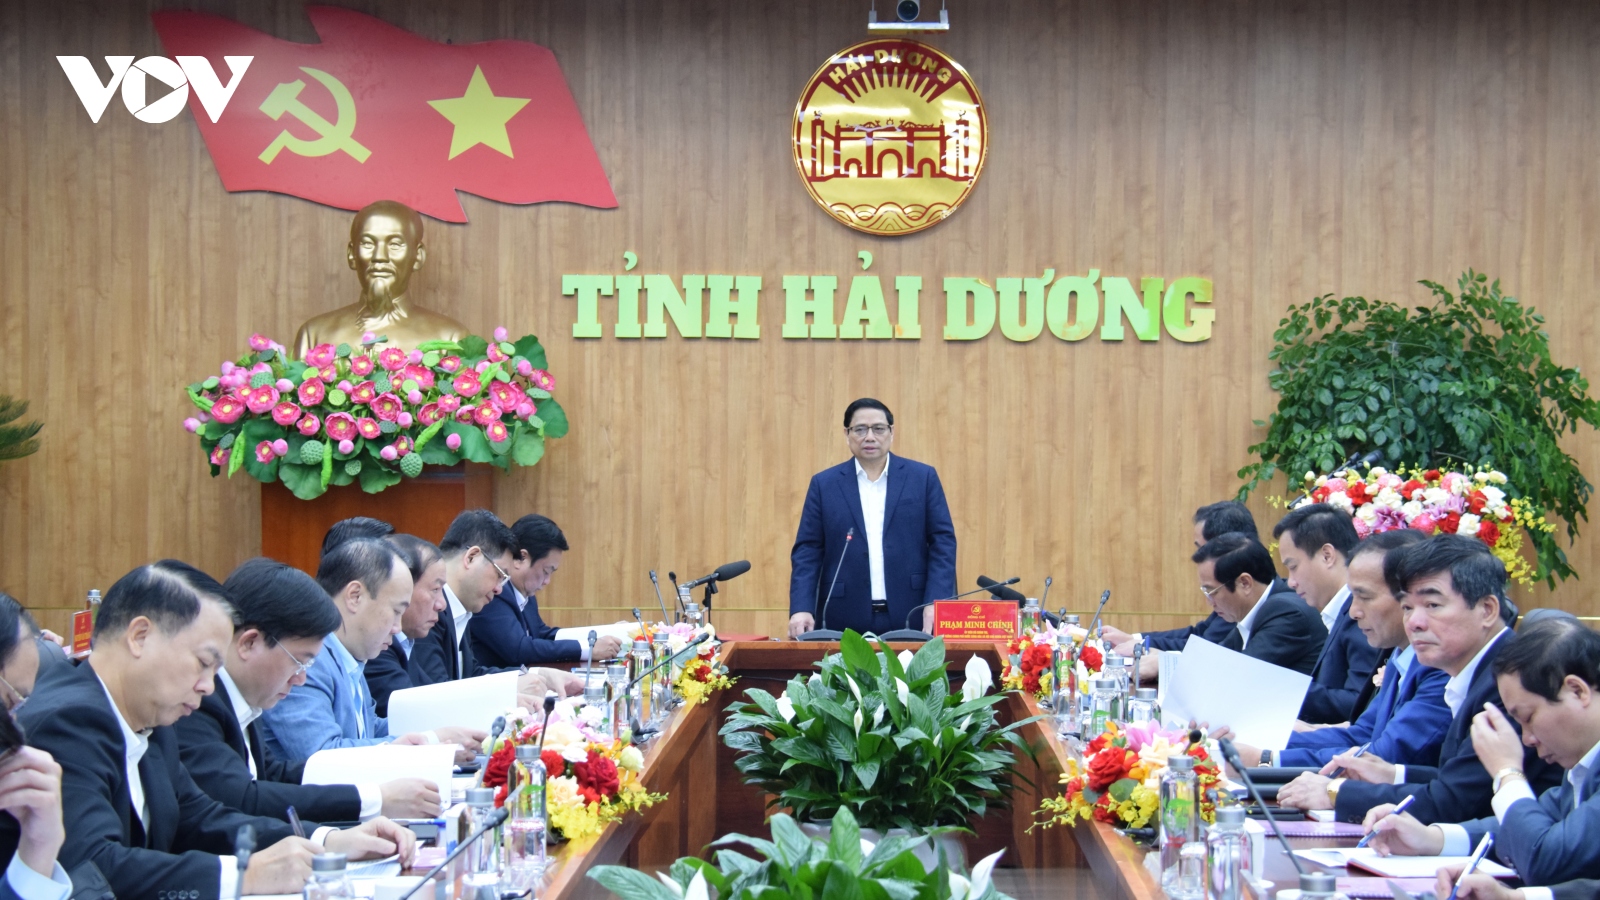 Thủ tướng Phạm Minh Chính làm việc với lãnh đạo tỉnh Hải Dương